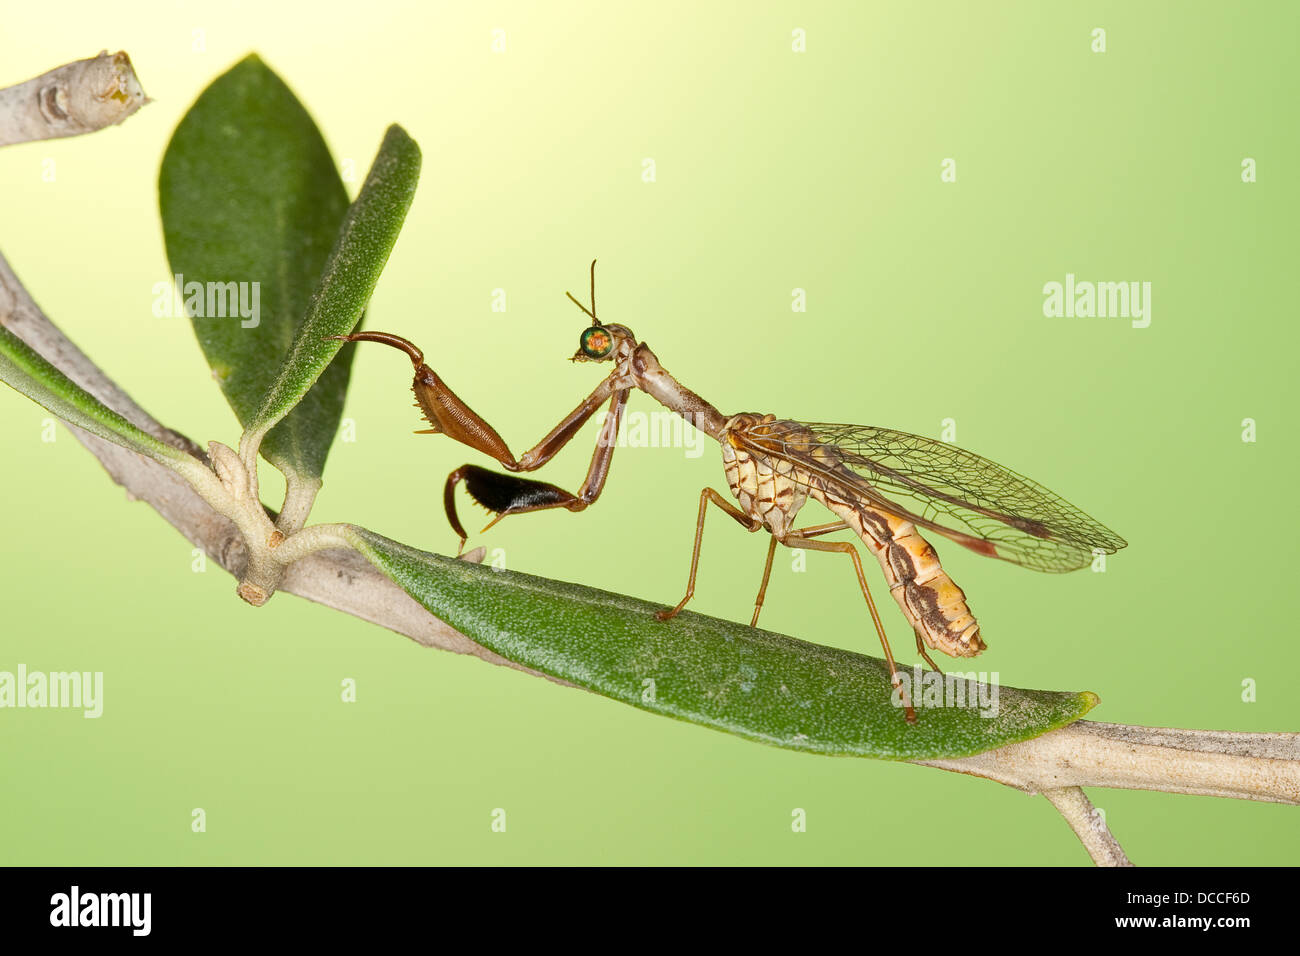 Steirische Fanghaft, Mantisspa styriaca, SYN. Poda pagana, SYN. Mantipa pagana, mosca da mantide, mosca da mantide Foto Stock